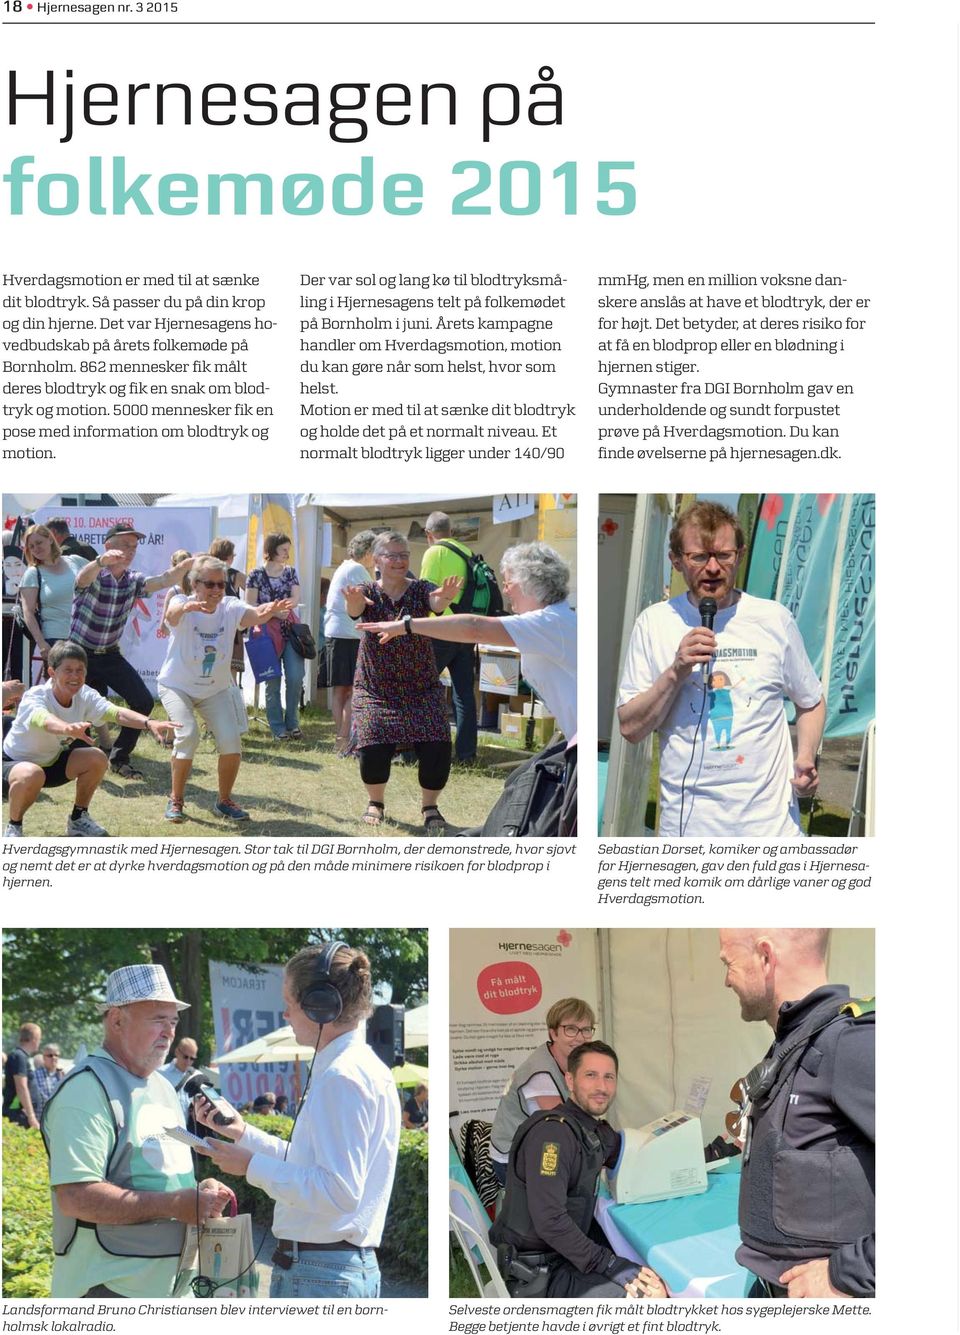 5000 mennesker fik en pose med information om blodtryk og motion. Der var sol og lang kø til blodtryksmåling i Hjernesagens telt på folkemødet på Bornholm i juni.